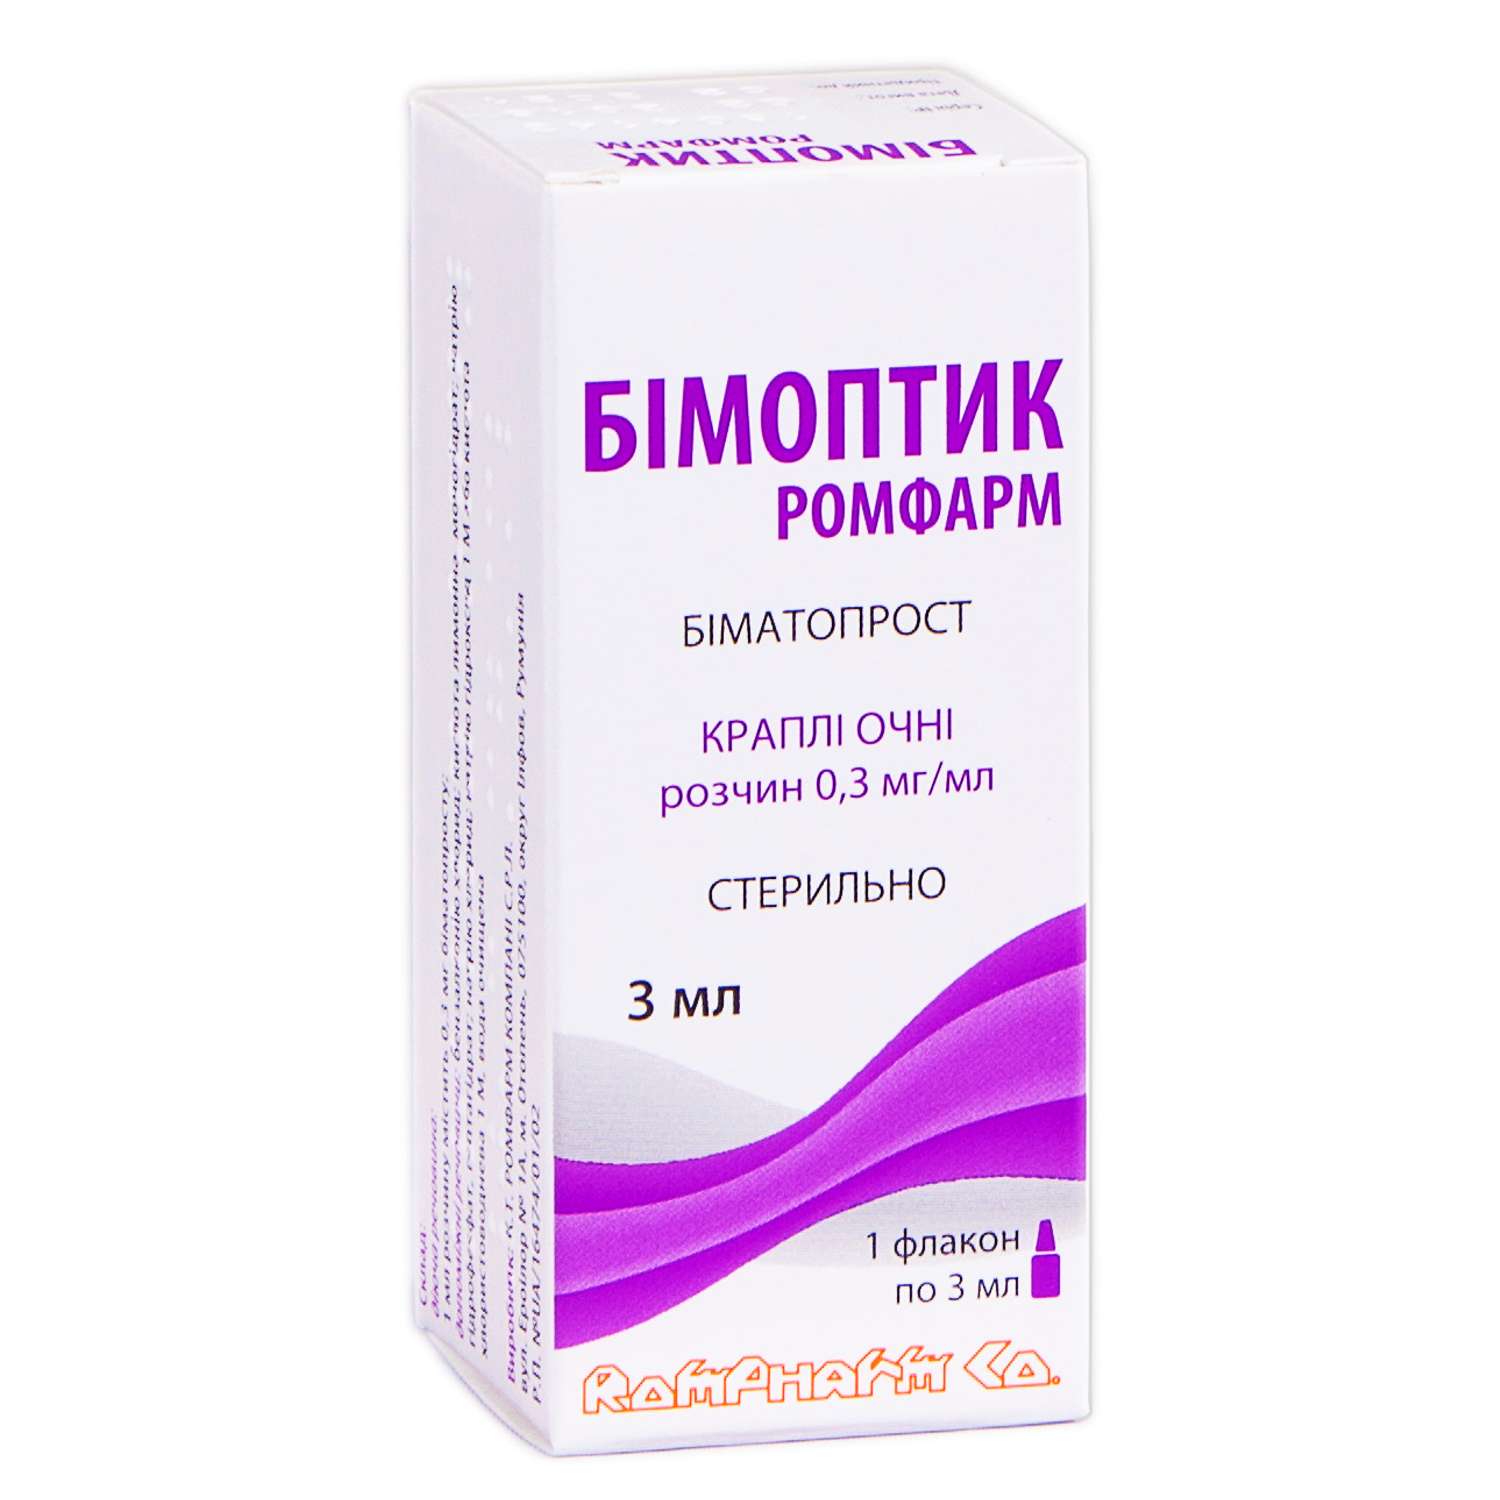 БІМОПТИК РОМФАРМ Краплі 0,3 мг/мл: інструкція, аналоги, ціна, показання .